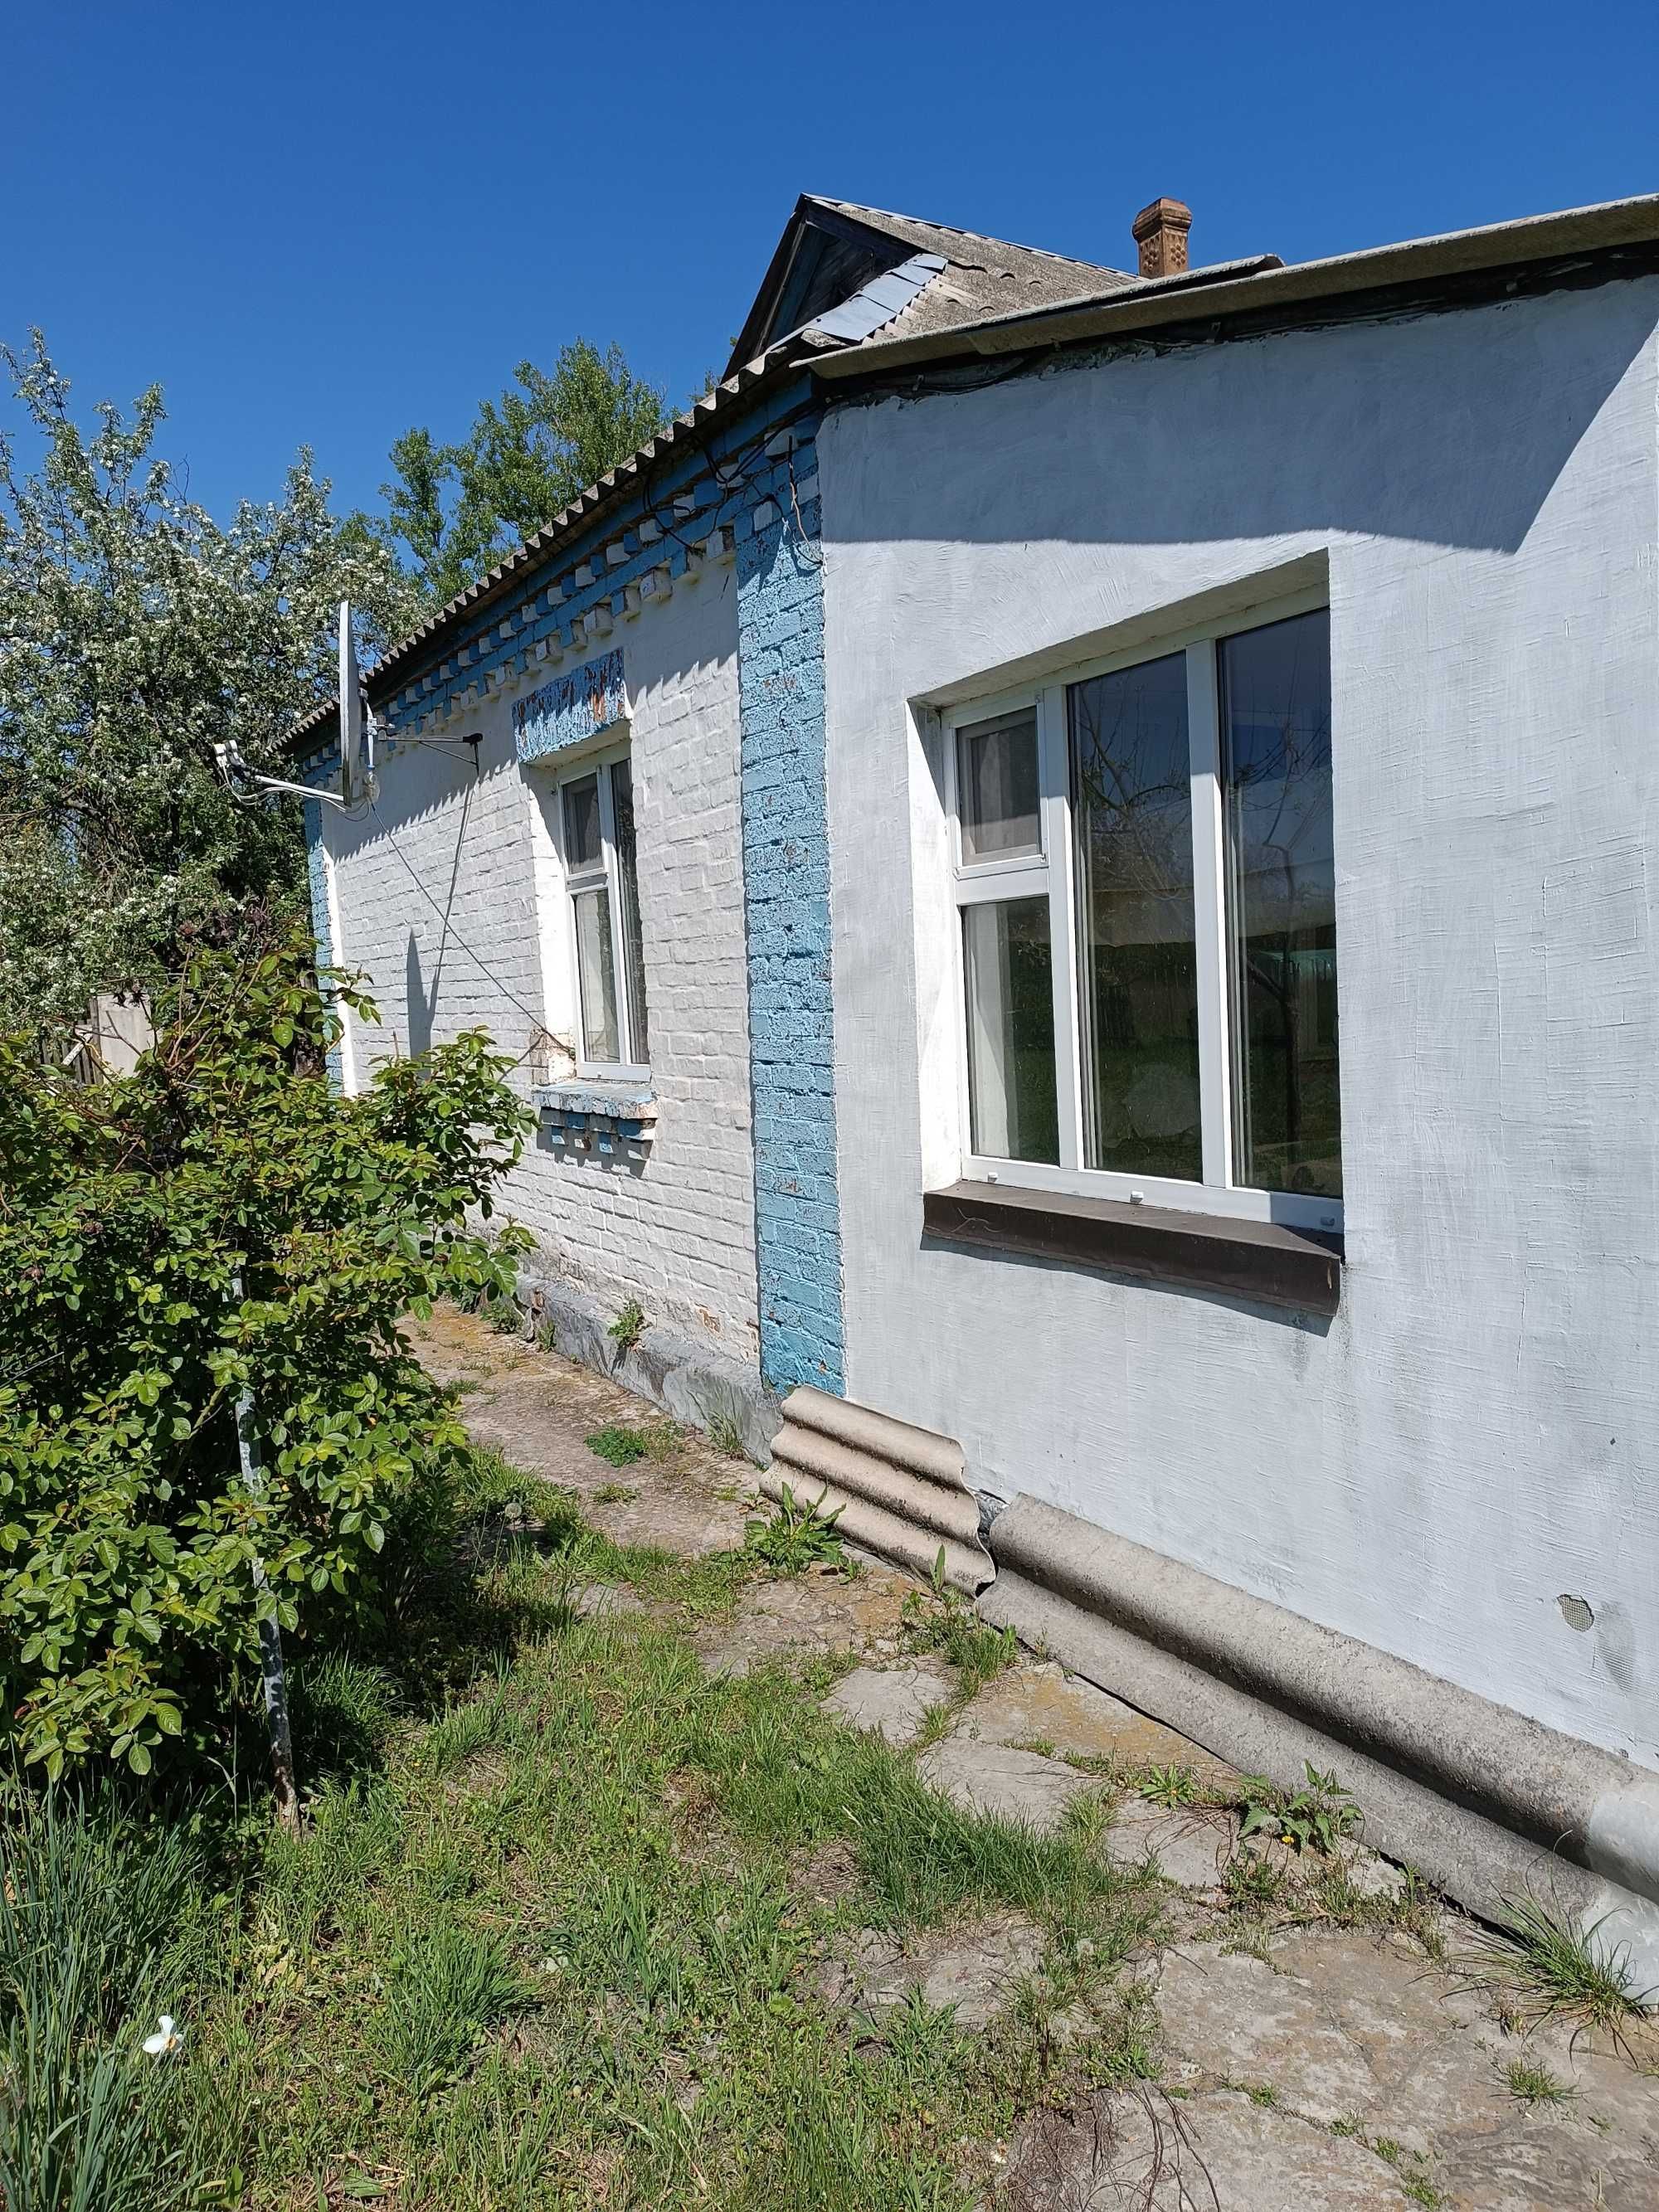 Продам будинок в селі Коржі